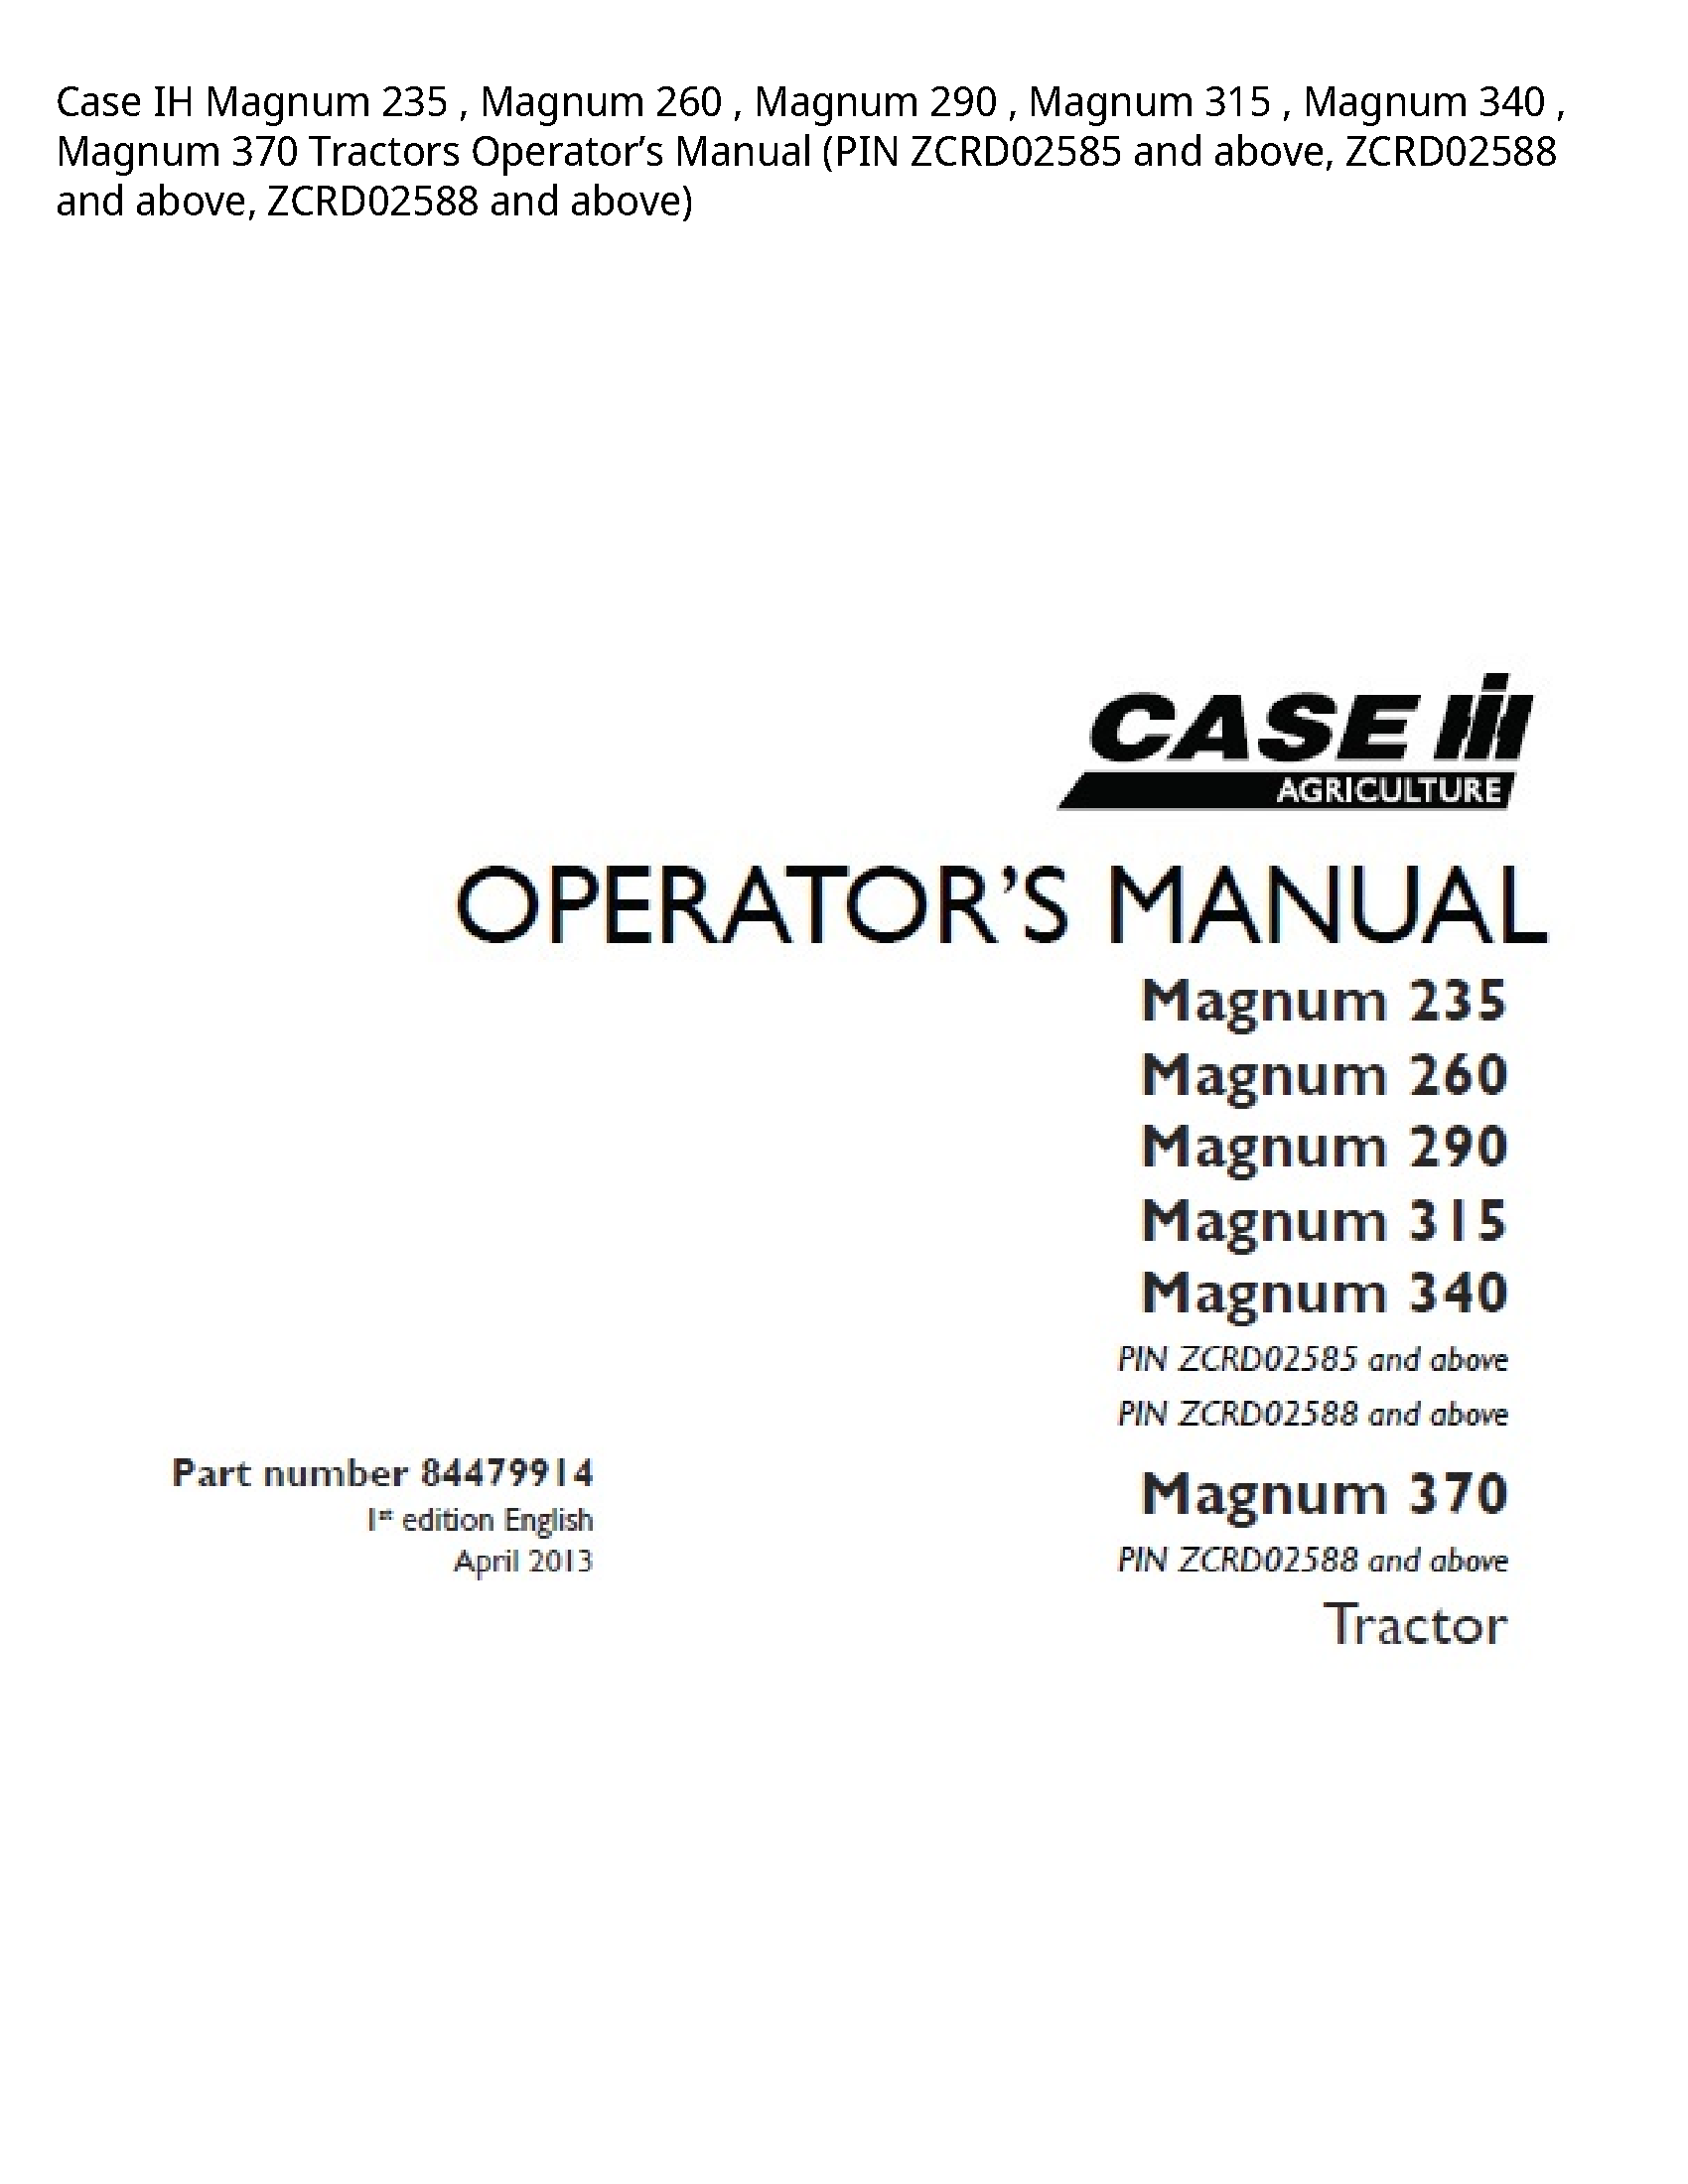 Case/Case IH 235 IH Magnum Magnum Magnum Magnum Magnum Magnum Tractors Operator’s manual